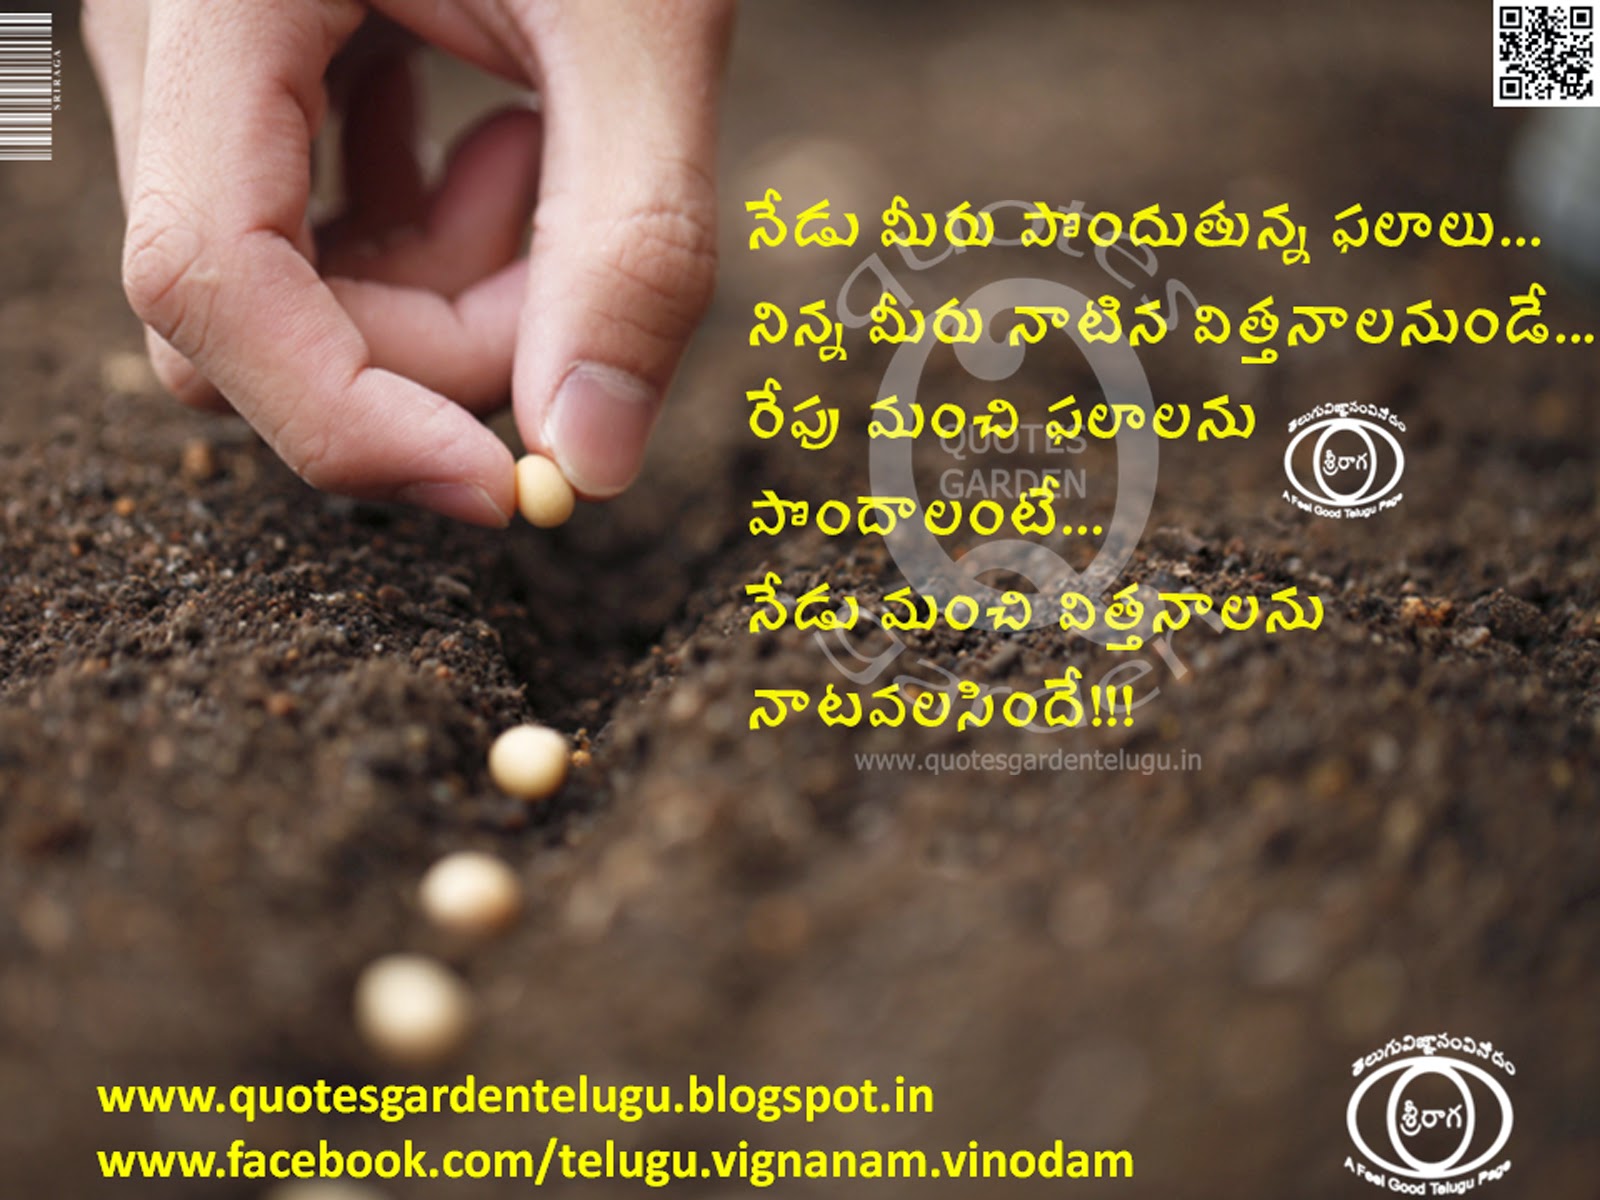 Images photoes Telugu inspirational life quotes quotesgardentelugu